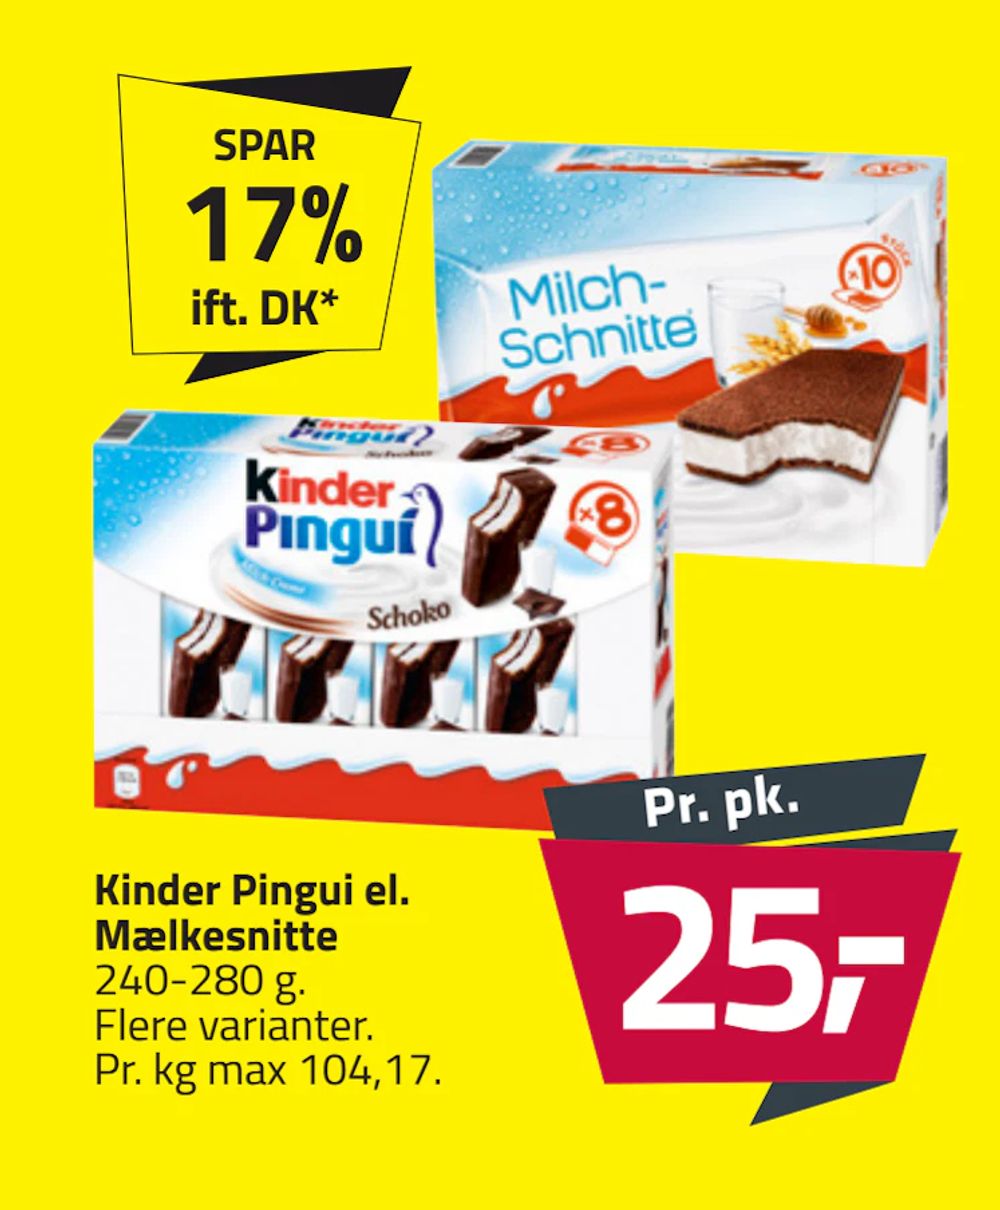 Tilbud på Kinder Pingui el. Mælkesnitte fra Fleggaard til 25 kr.